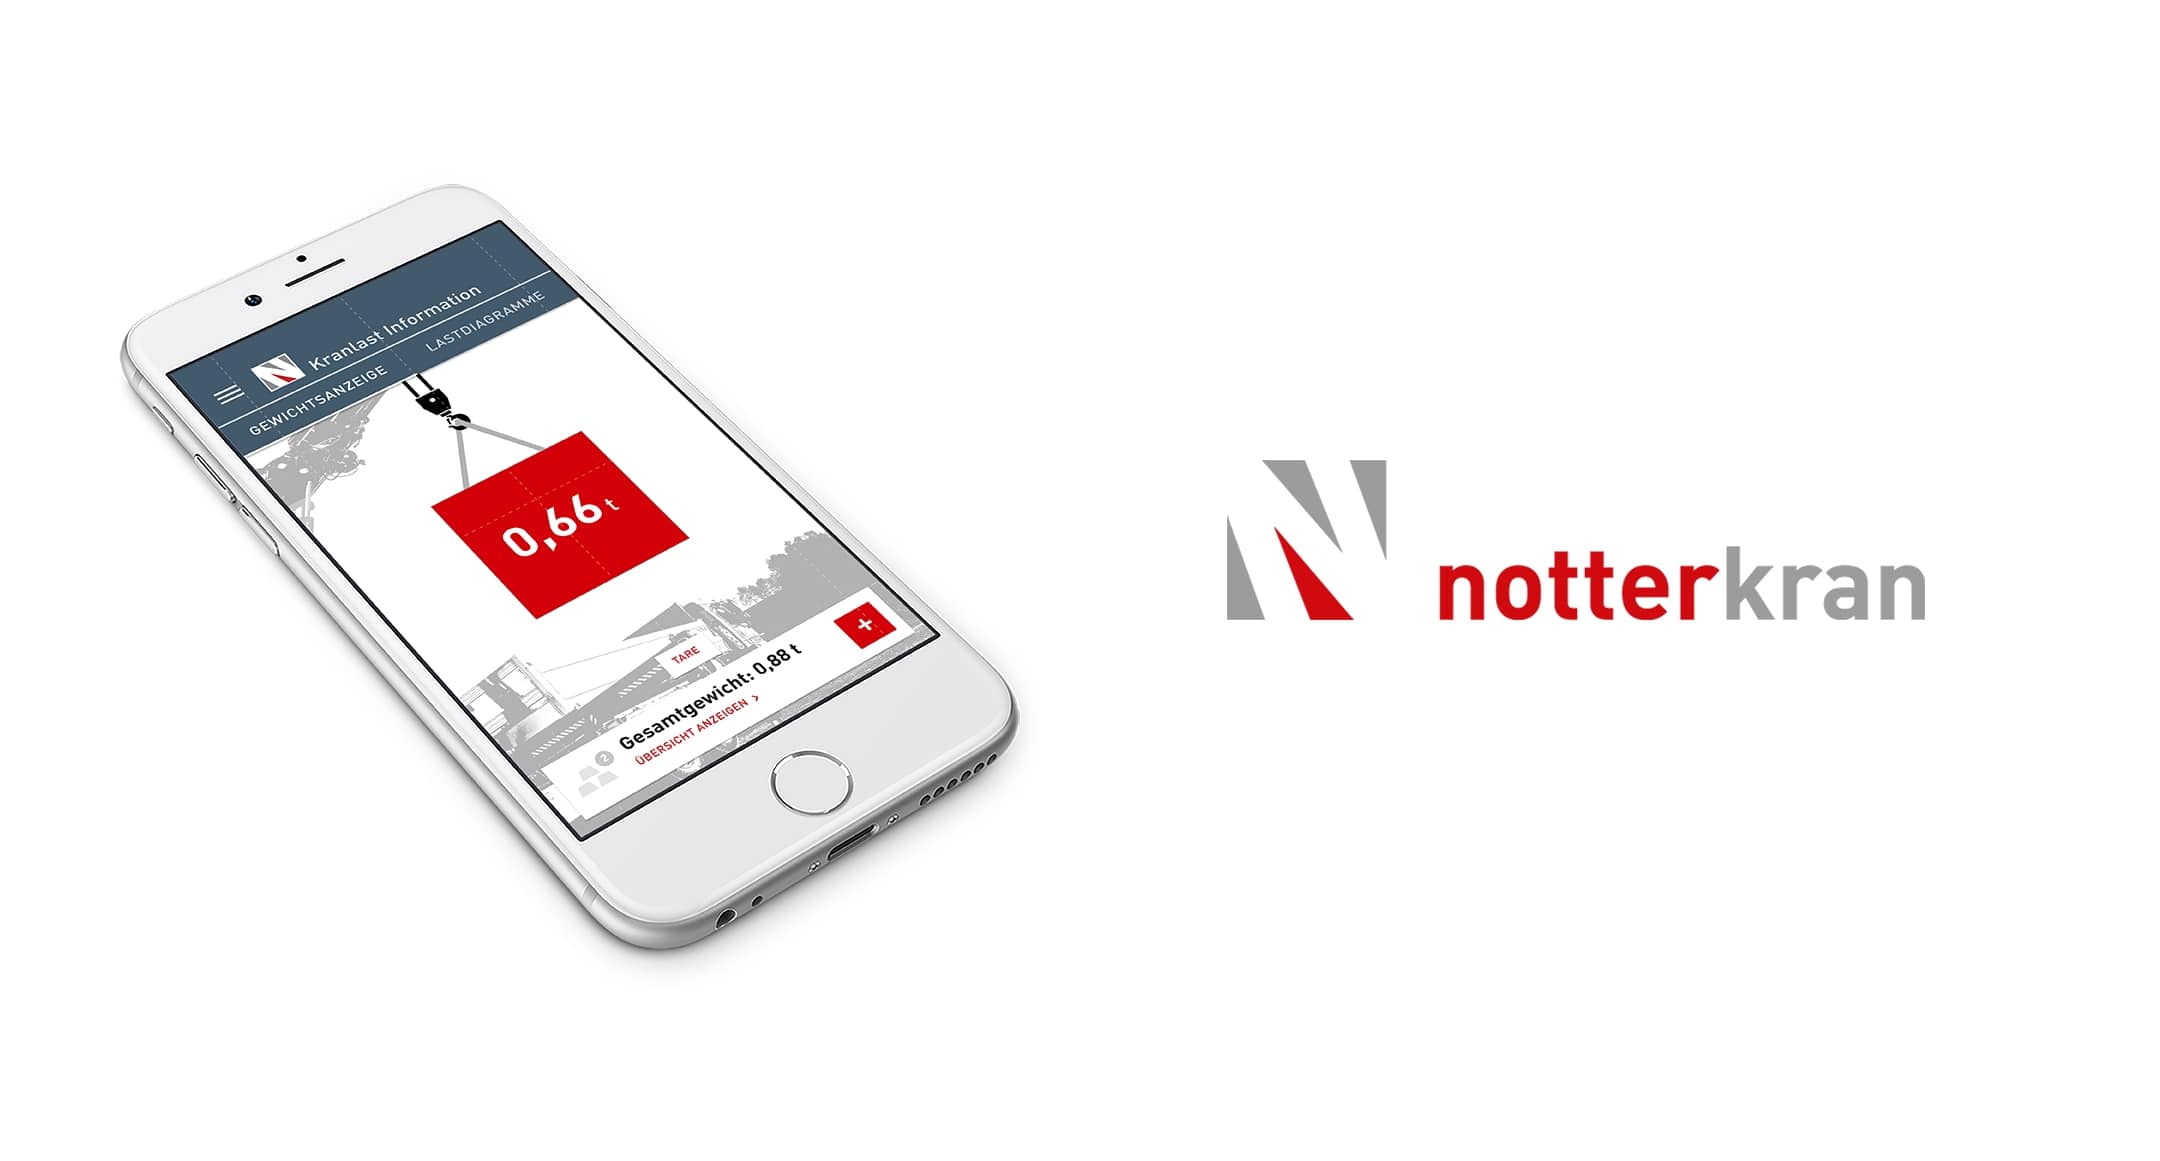 Notterkran App